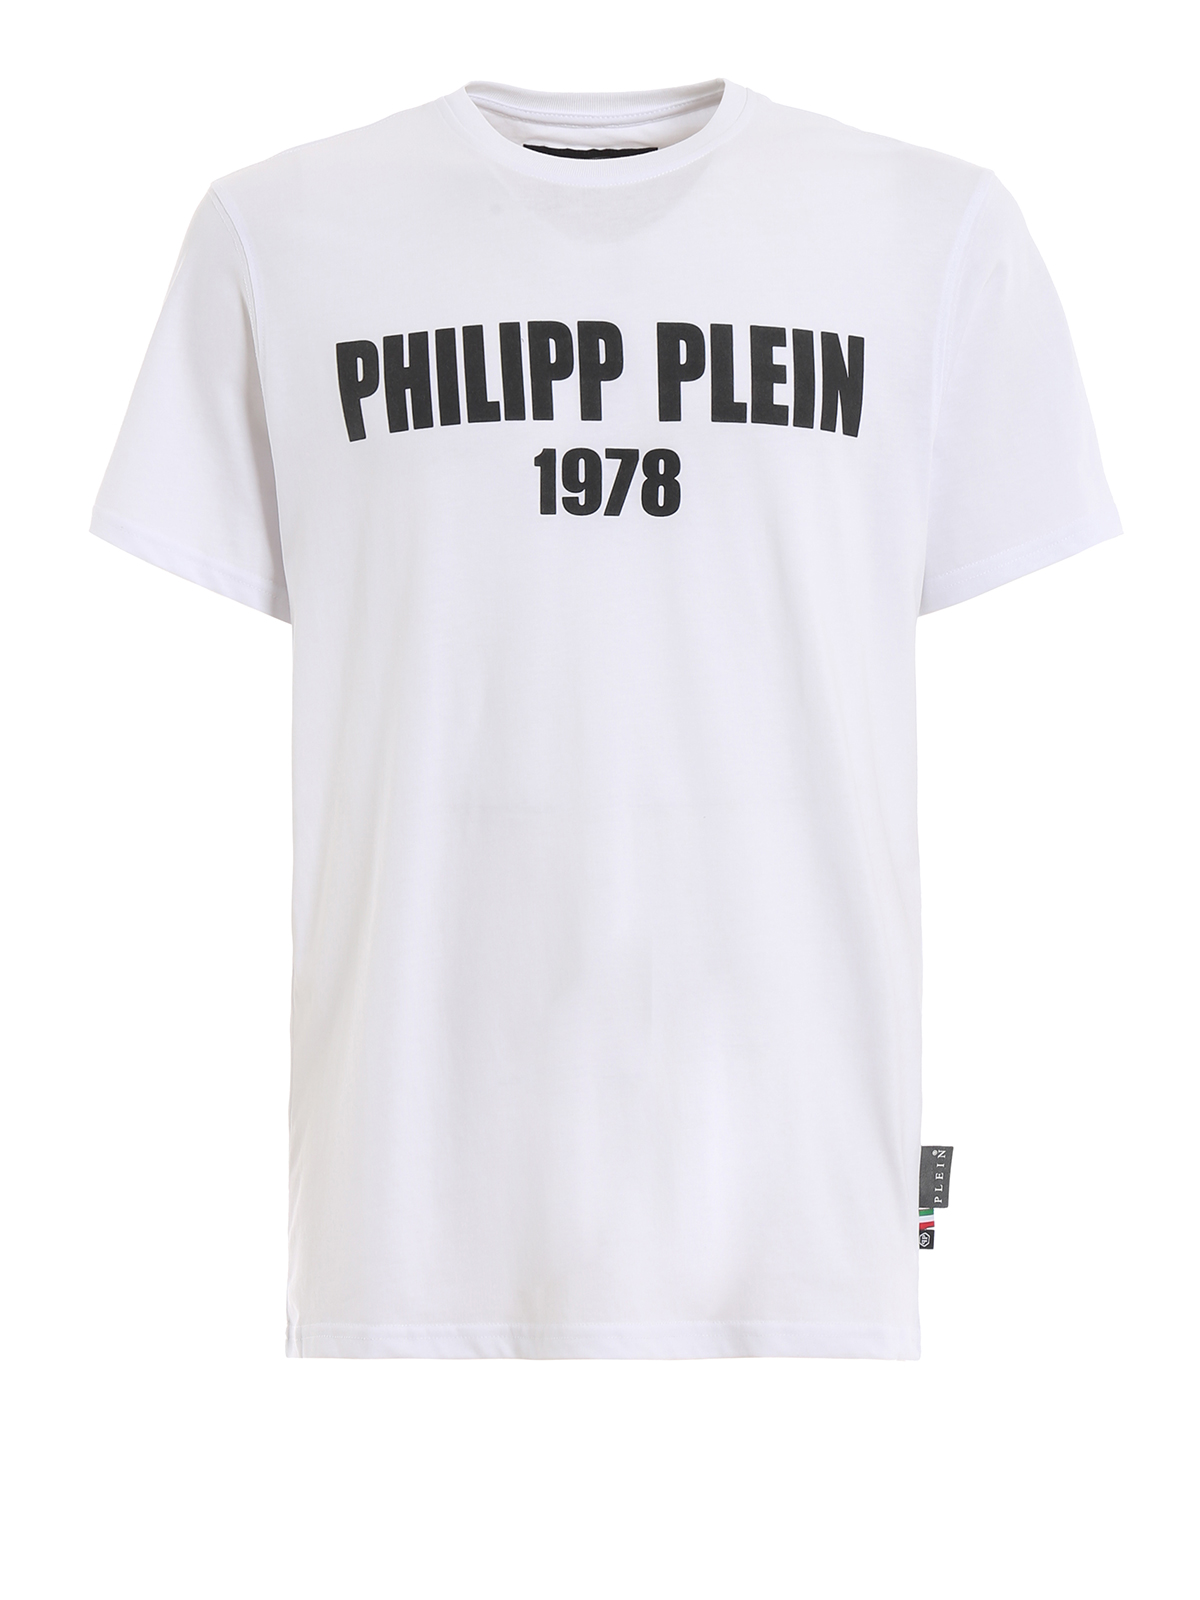 1978 philipp plein